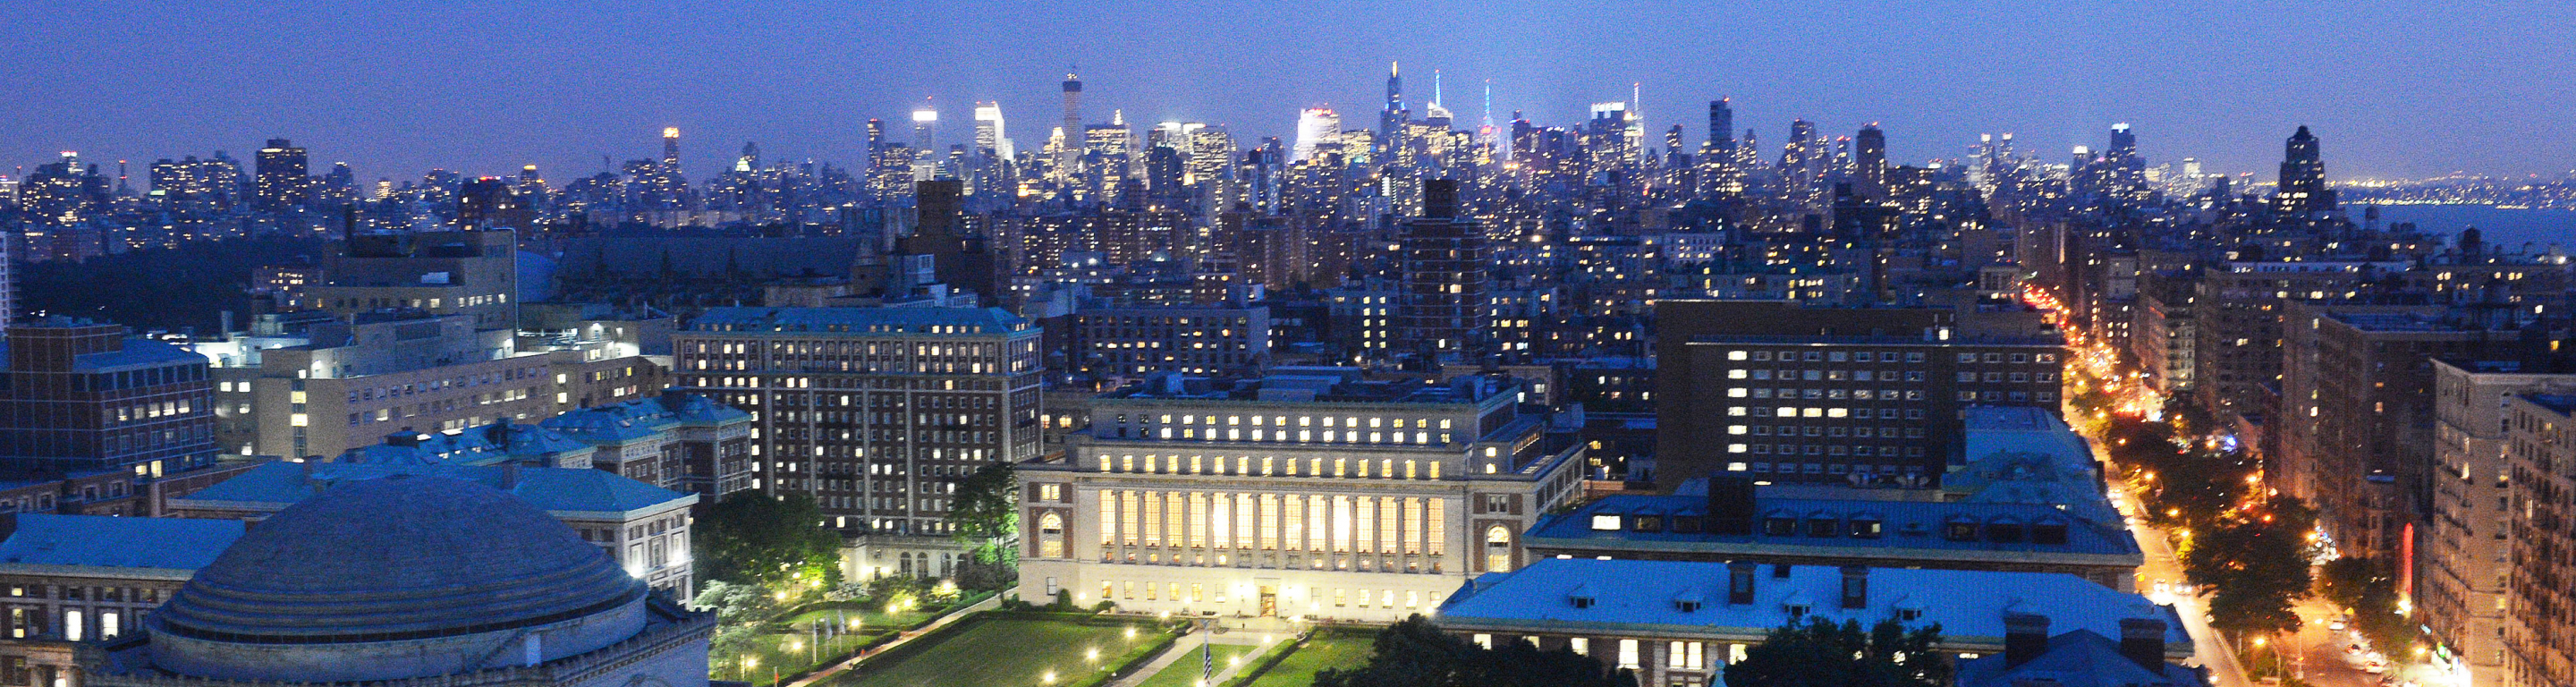 An aerial shot across Columbia's campus towards Midtown Manhattan